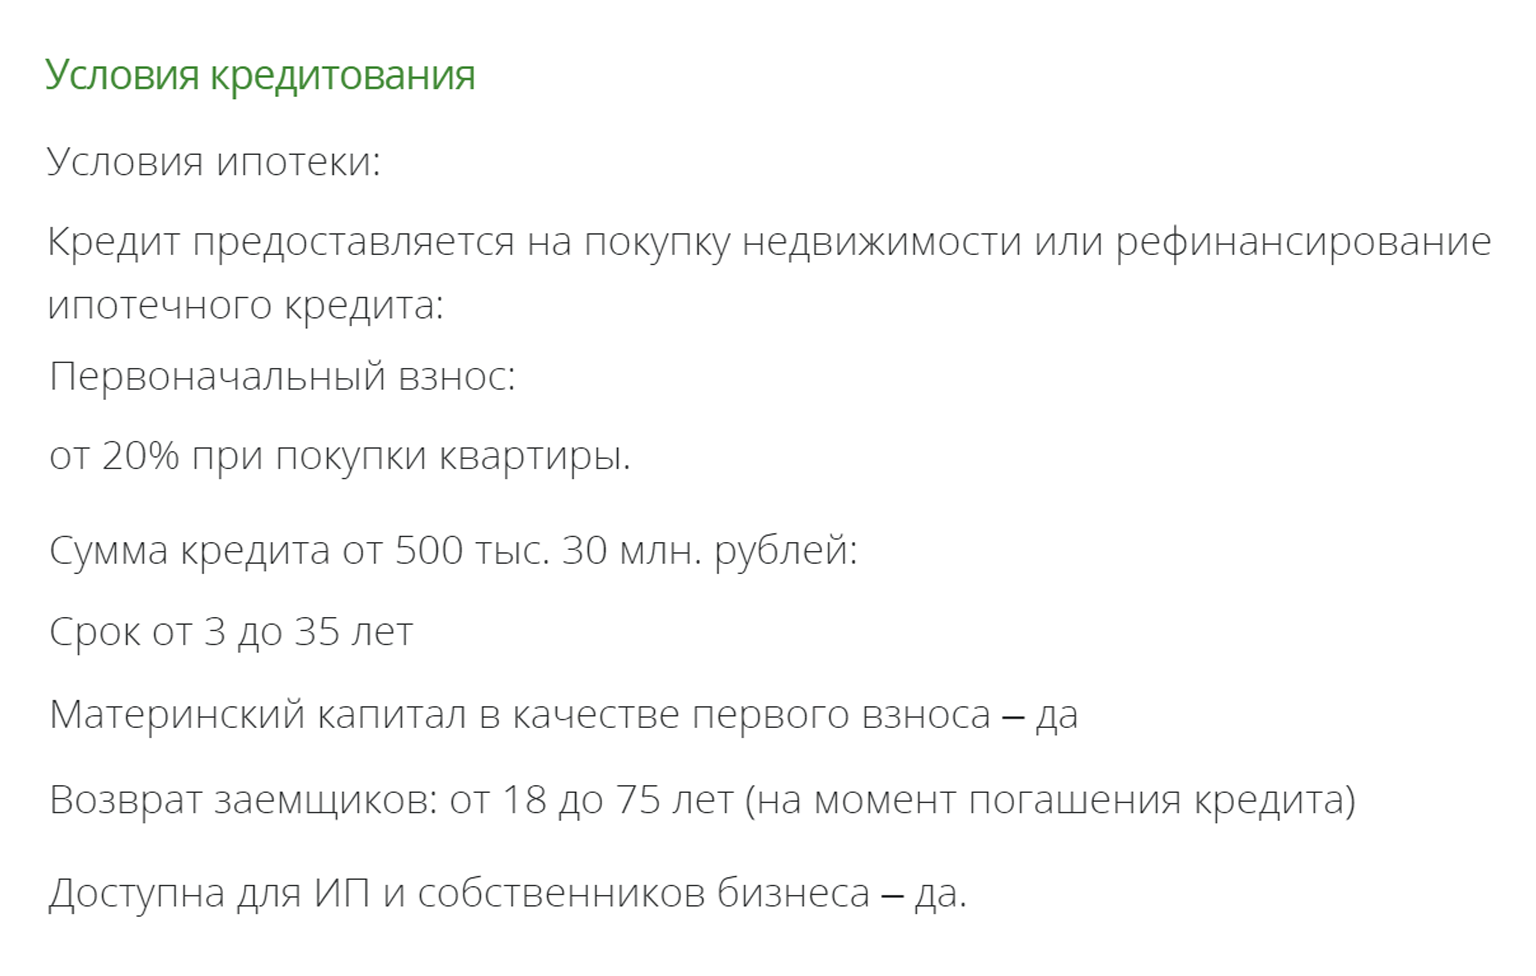 «Примсоцбанк» предлагает в ипотеку по паспорту до 30 млн рублей со взносом от 20%. Хотя по стандартной программе с подтверждением дохода сумма кредита — до 60 млн, взнос — от 10%. Источник: pskb.com